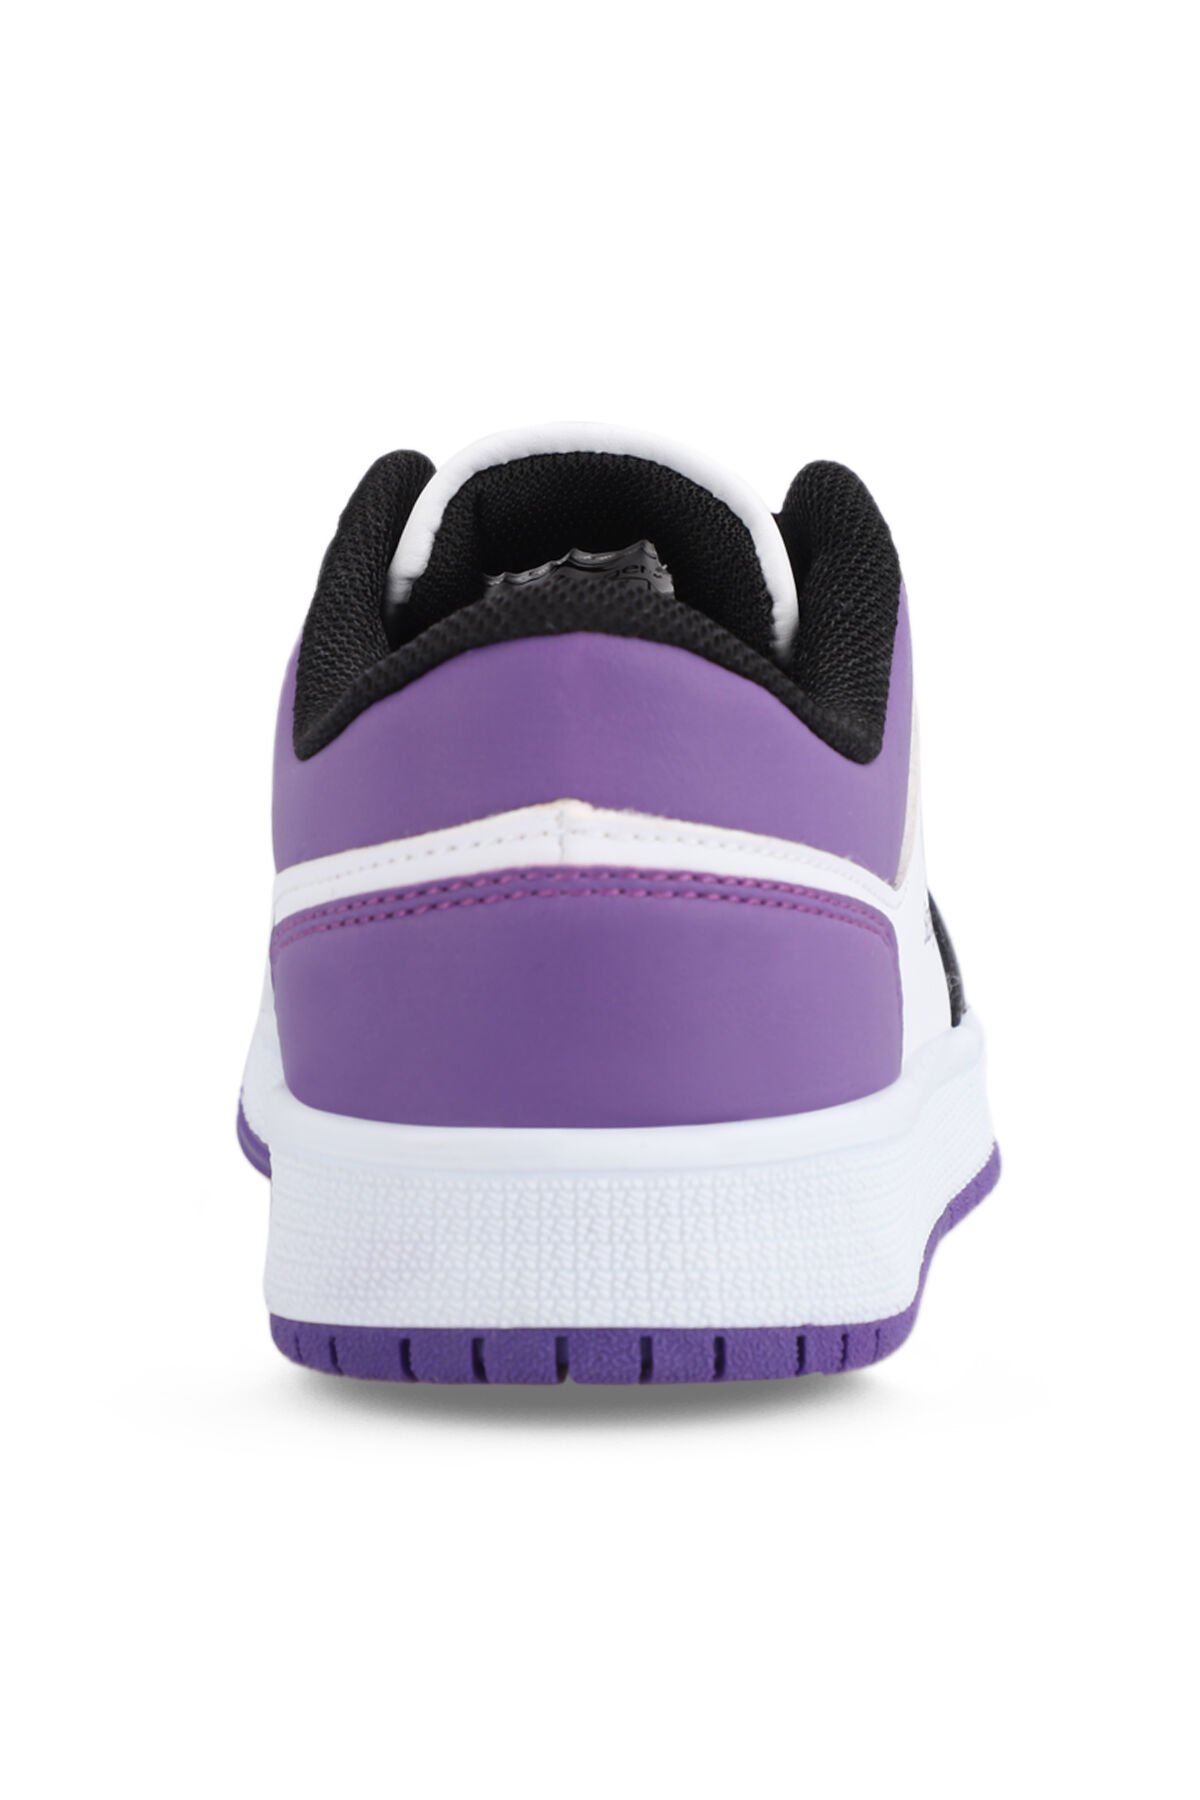 PRINCE I Sneaker Kadın Ayakkabı Beyaz / Mor - Thumbnail